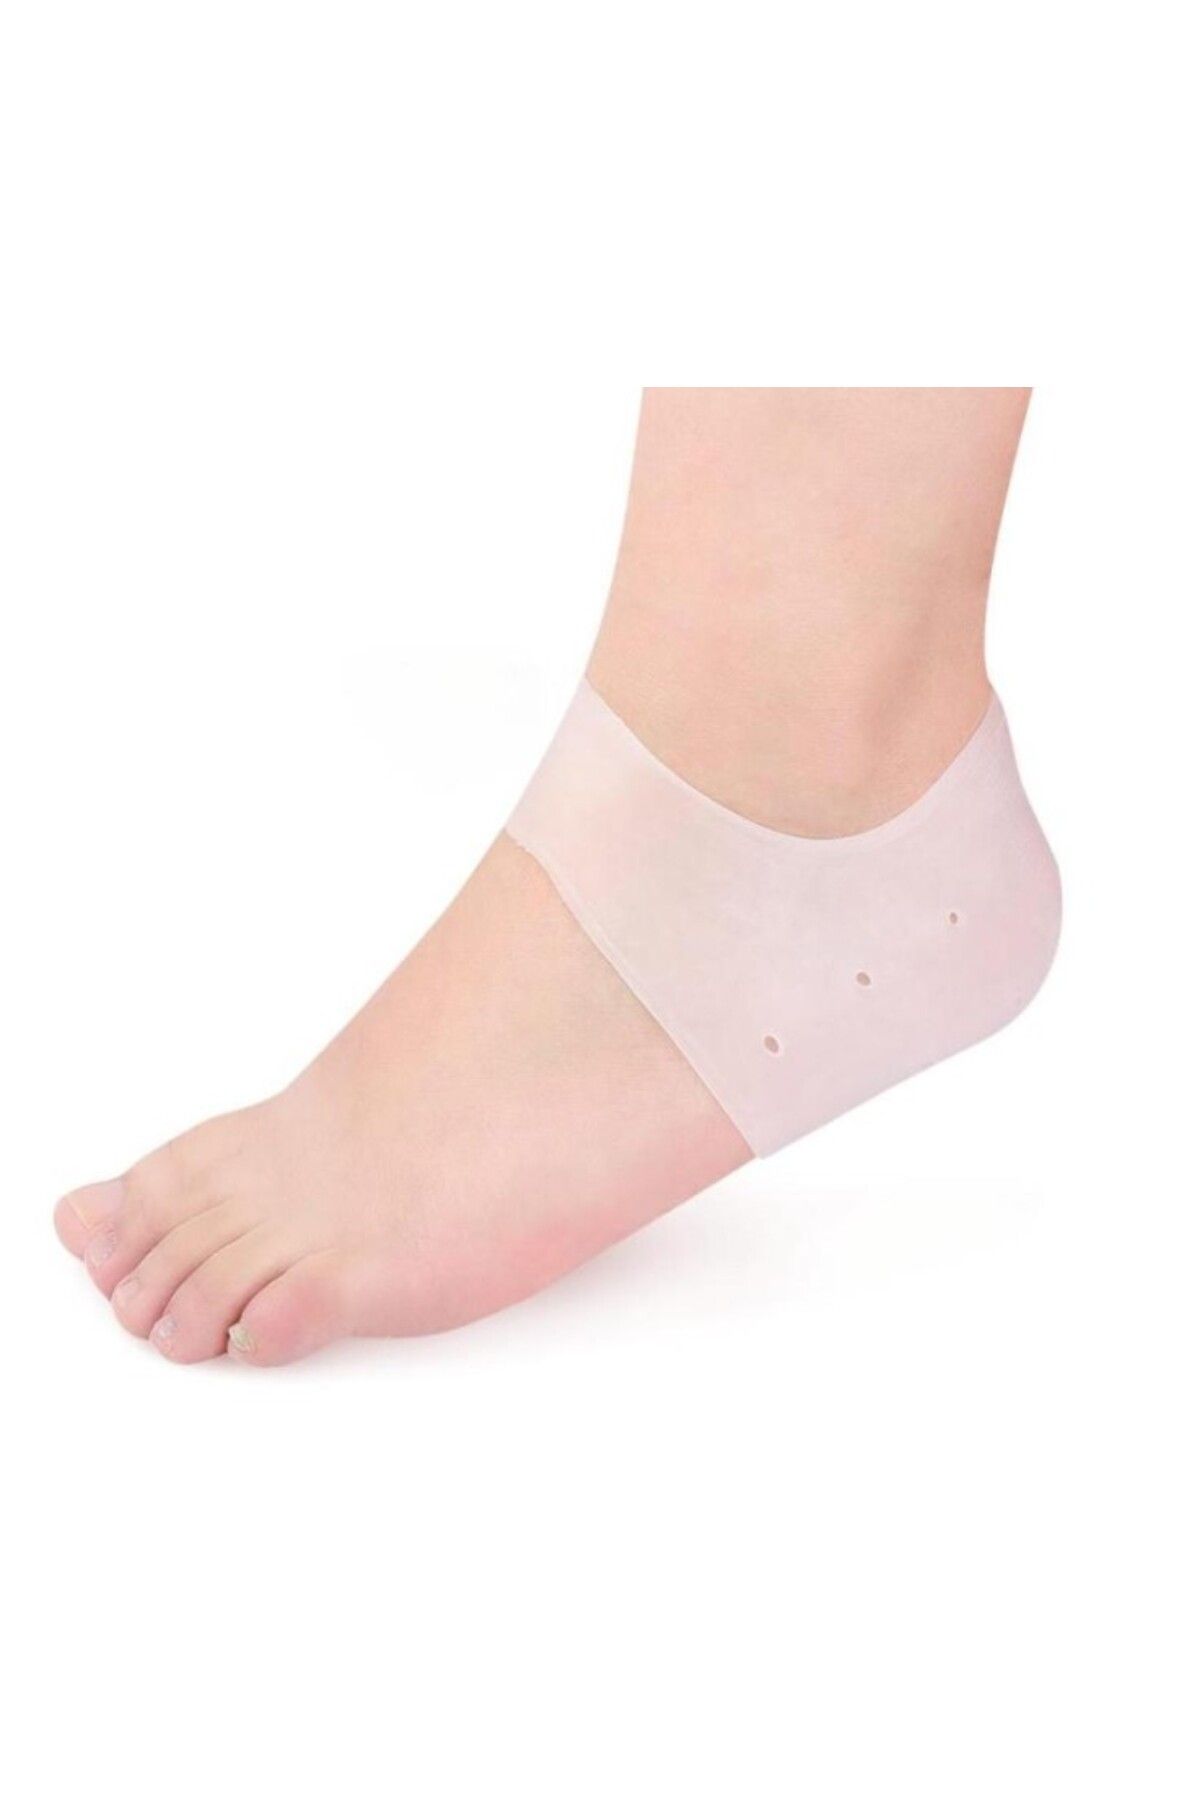 New Street Silikon Topuk Çorabı Beyaz Renk (44CVS34)